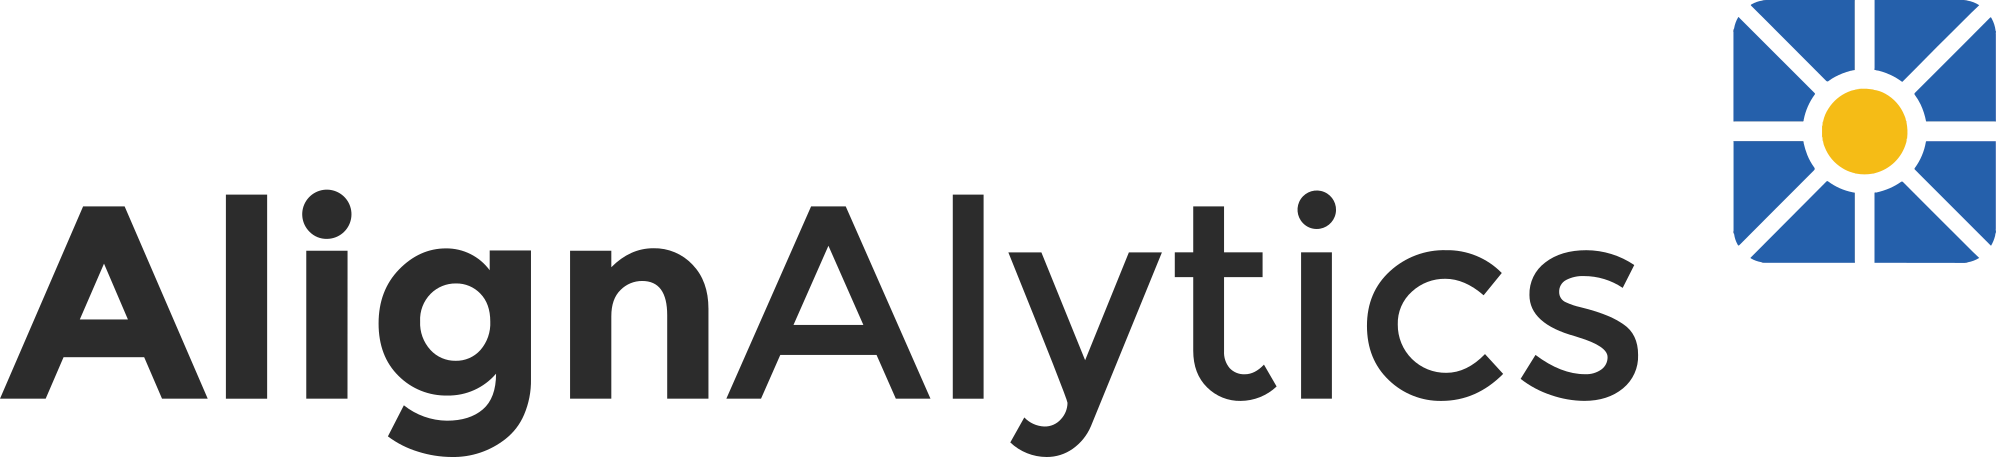 Align-Alytics